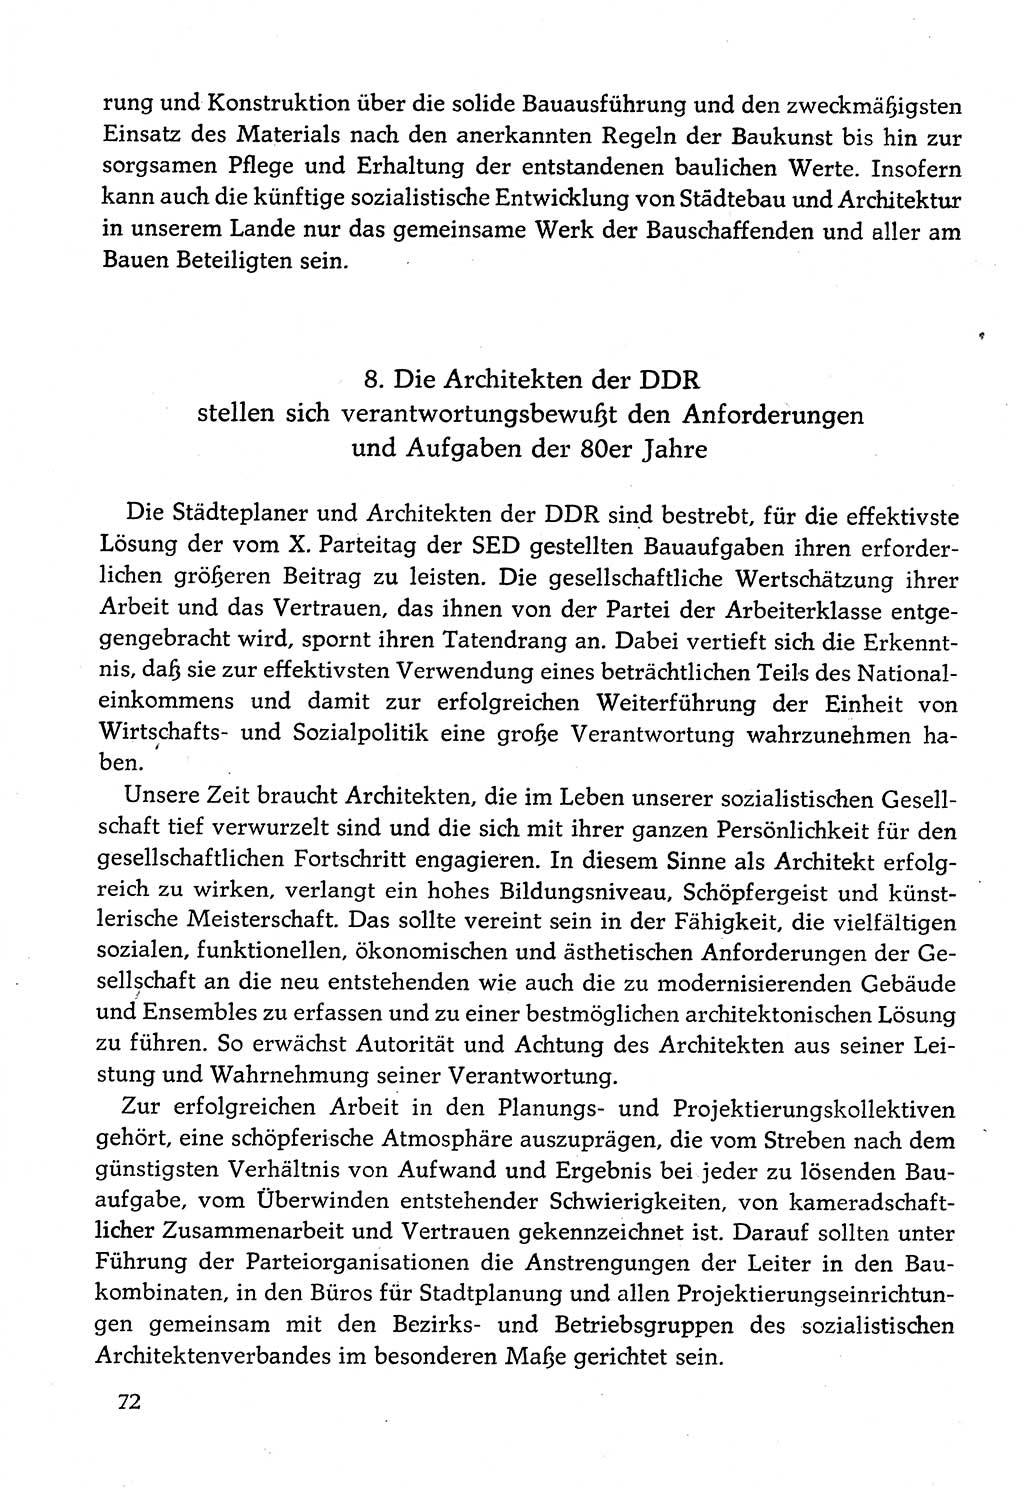 Dokumente der Sozialistischen Einheitspartei Deutschlands (SED) [Deutsche Demokratische Republik (DDR)] 1982-1983, Seite 72 (Dok. SED DDR 1982-1983, S. 72)